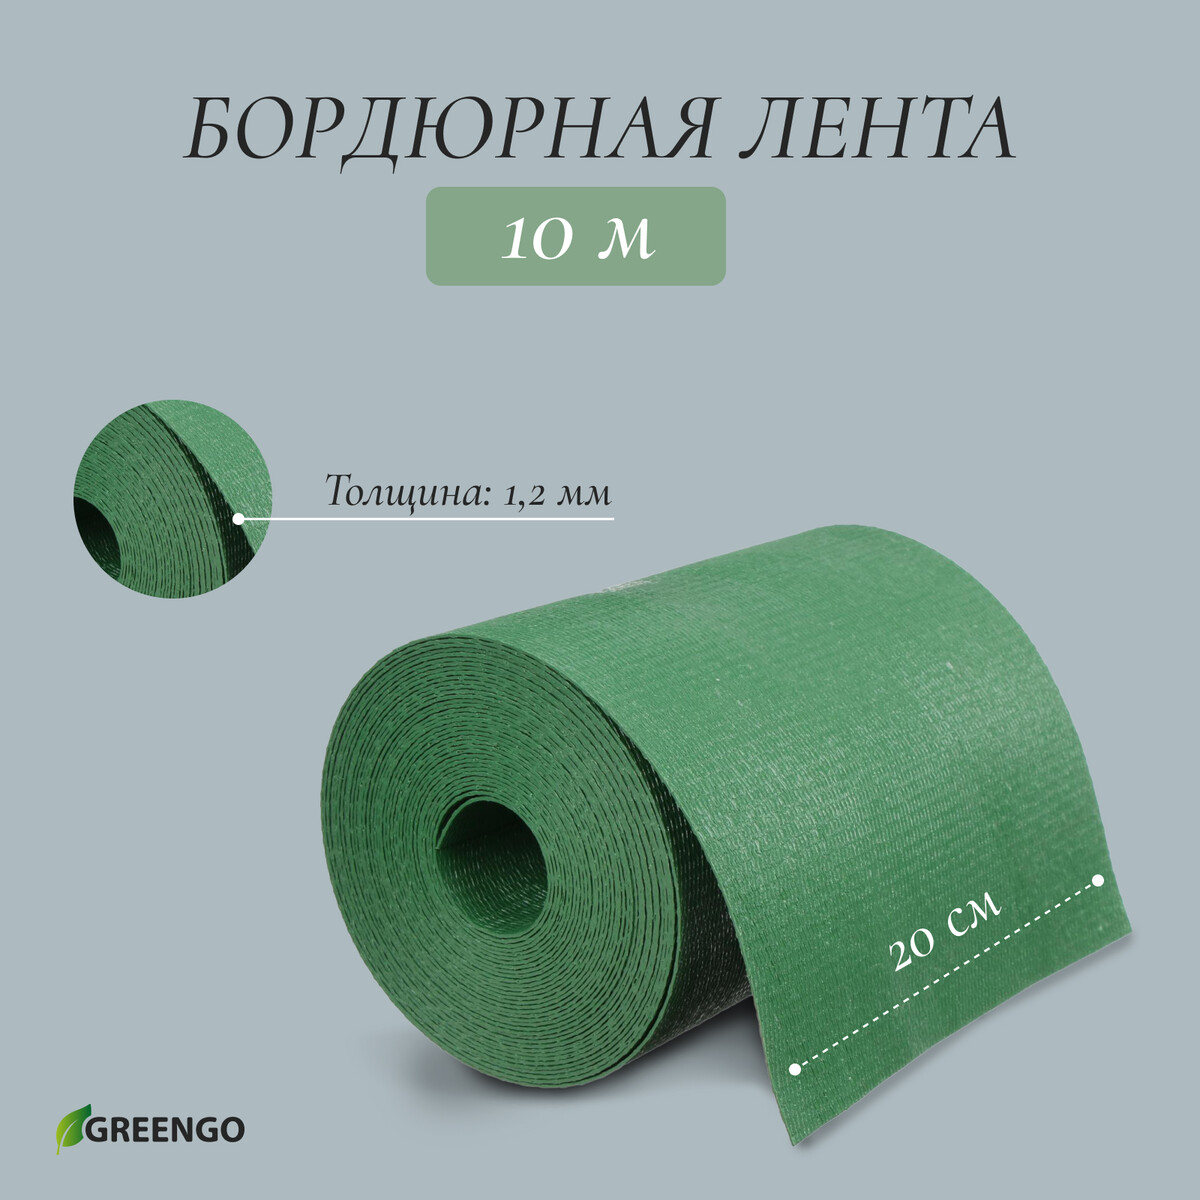 Лента бордюрная, 0.2 × 10 м, толщина 1.2 мм, пластиковая, зеленая, greengo лента бордюрная 0 2 × 9 м толщина 1 2 мм пластиковая фигурная коричневая greengo